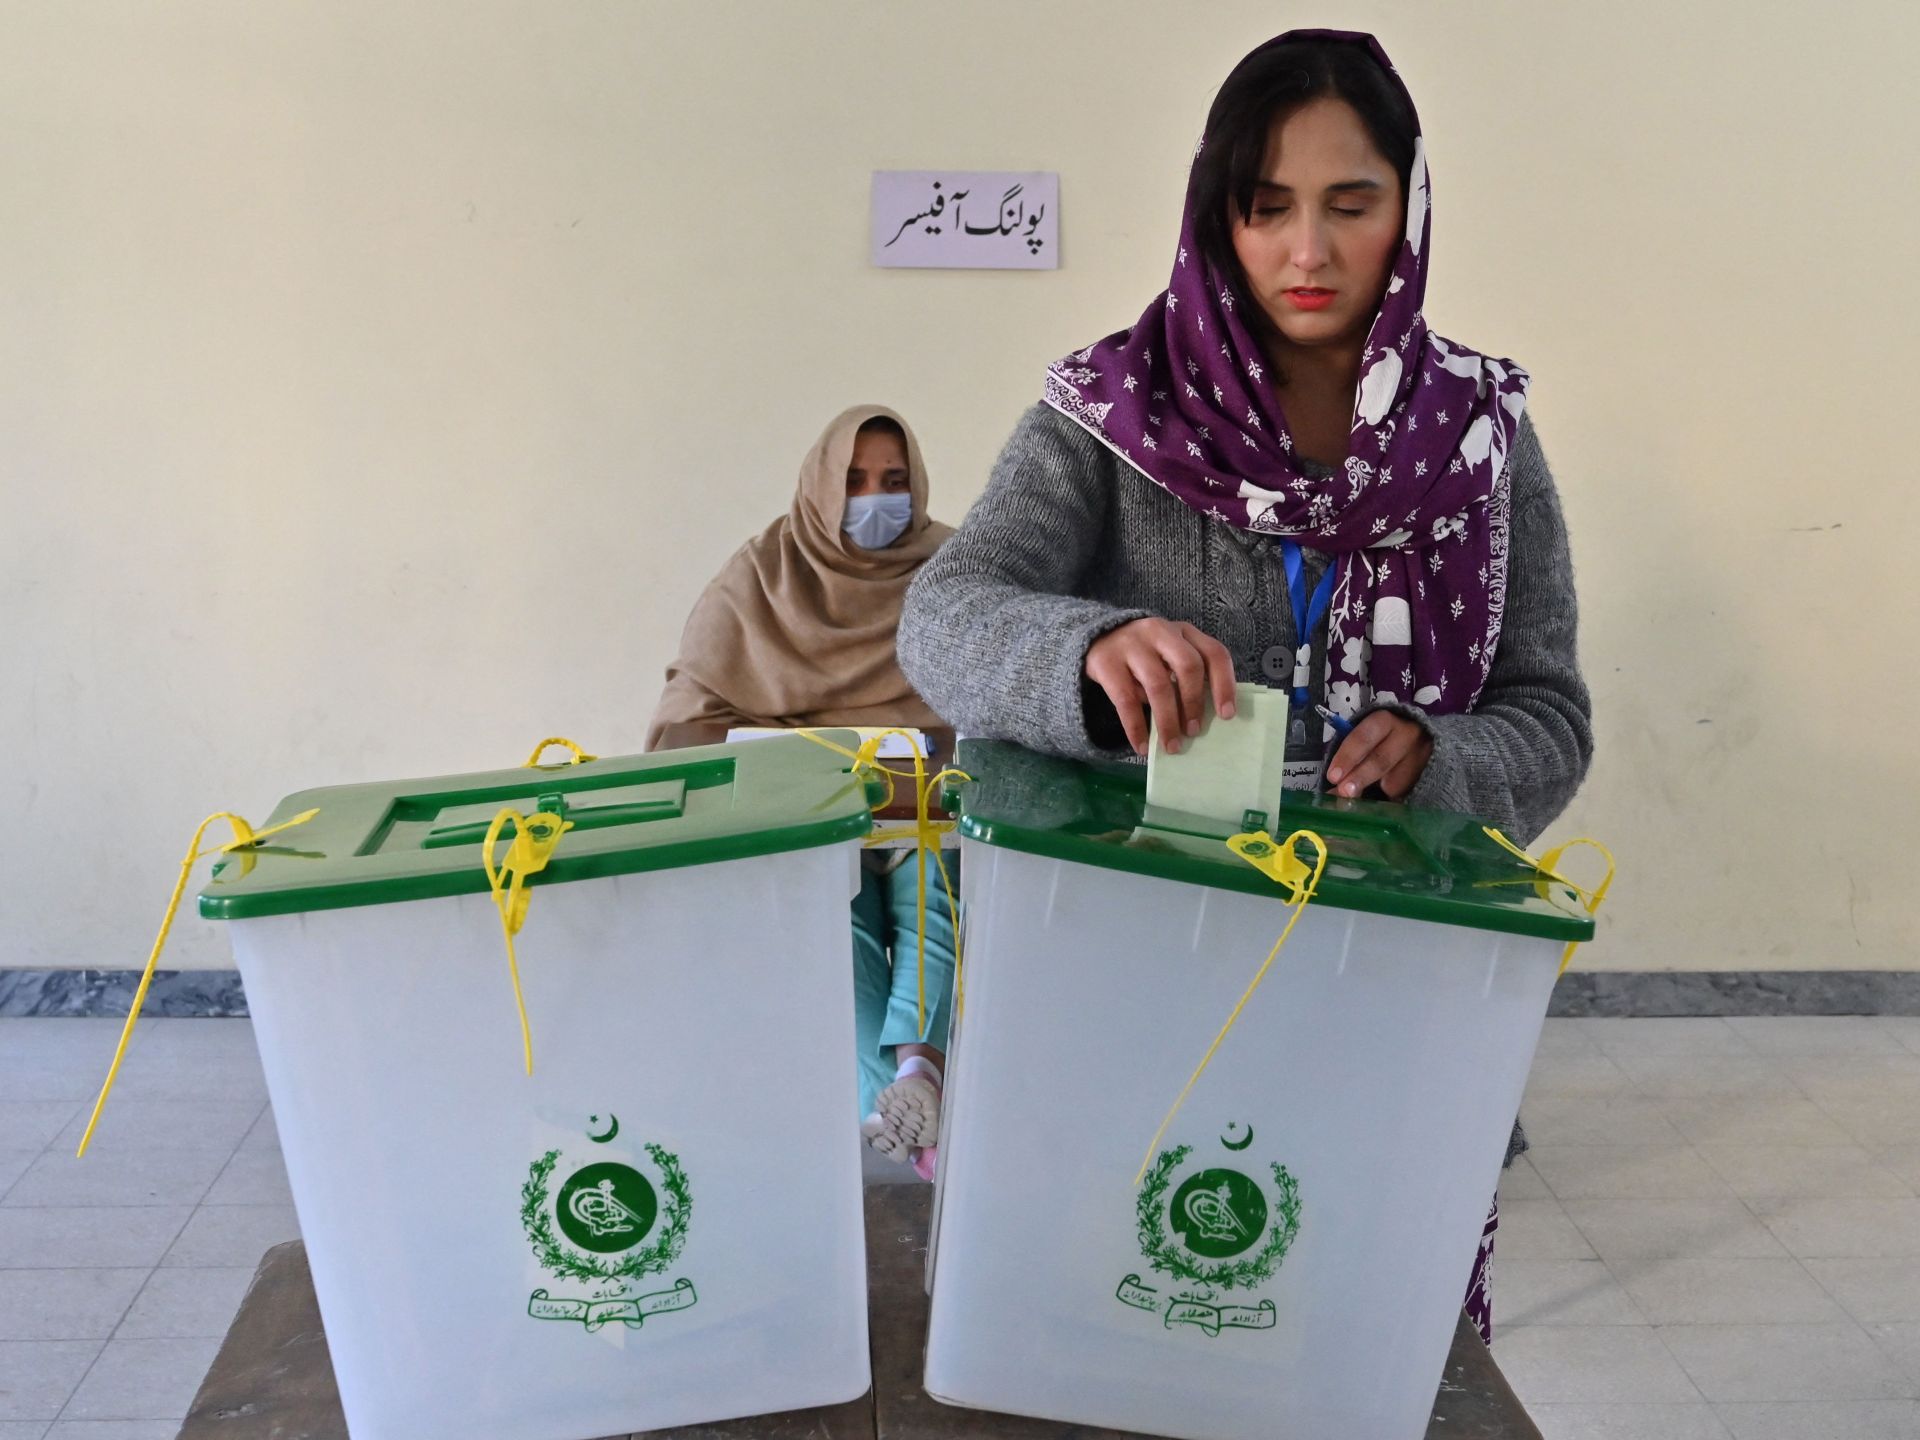 بدء التصويت بالانتخابات التشريعية والإقليمية في باكستان | أخبار – البوكس نيوز